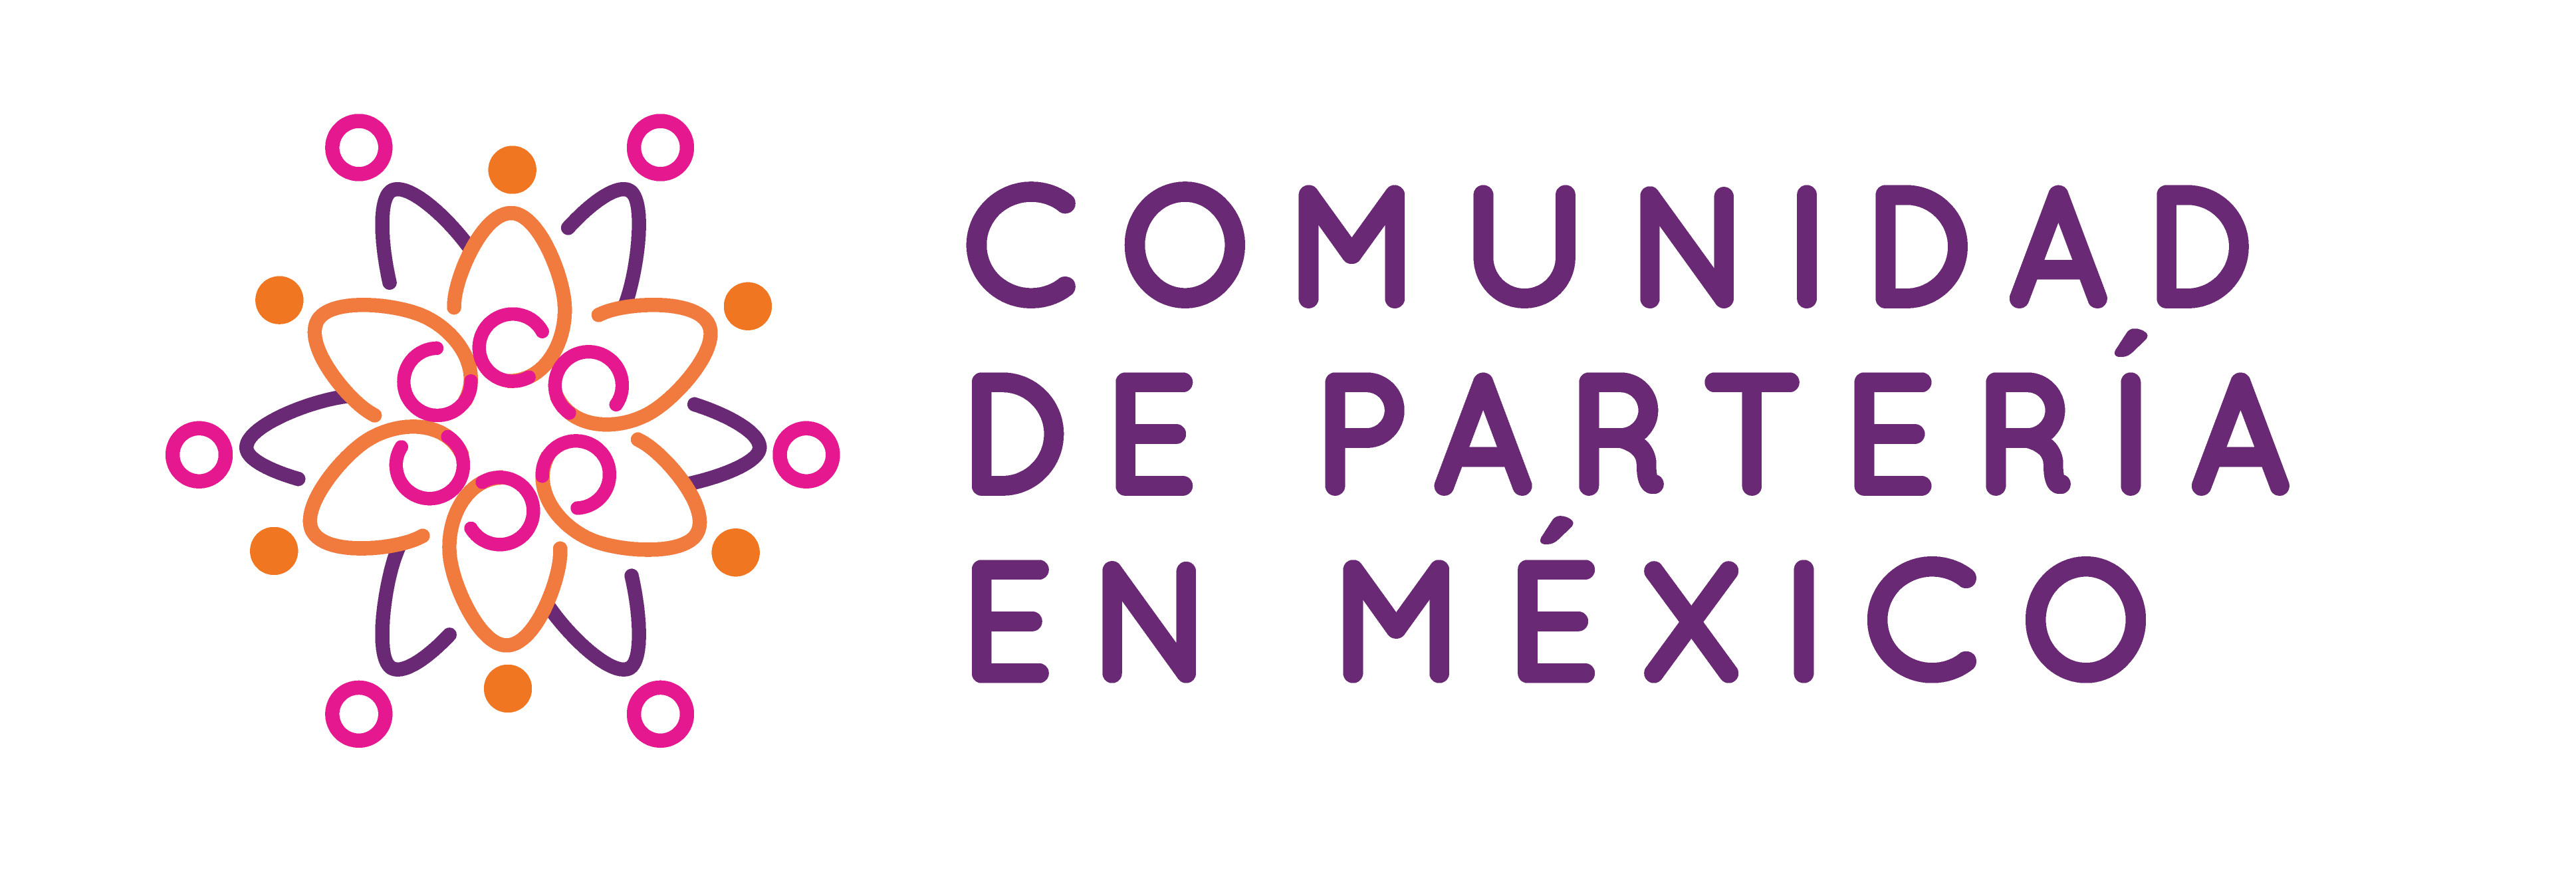 Comunidad de Partería en México